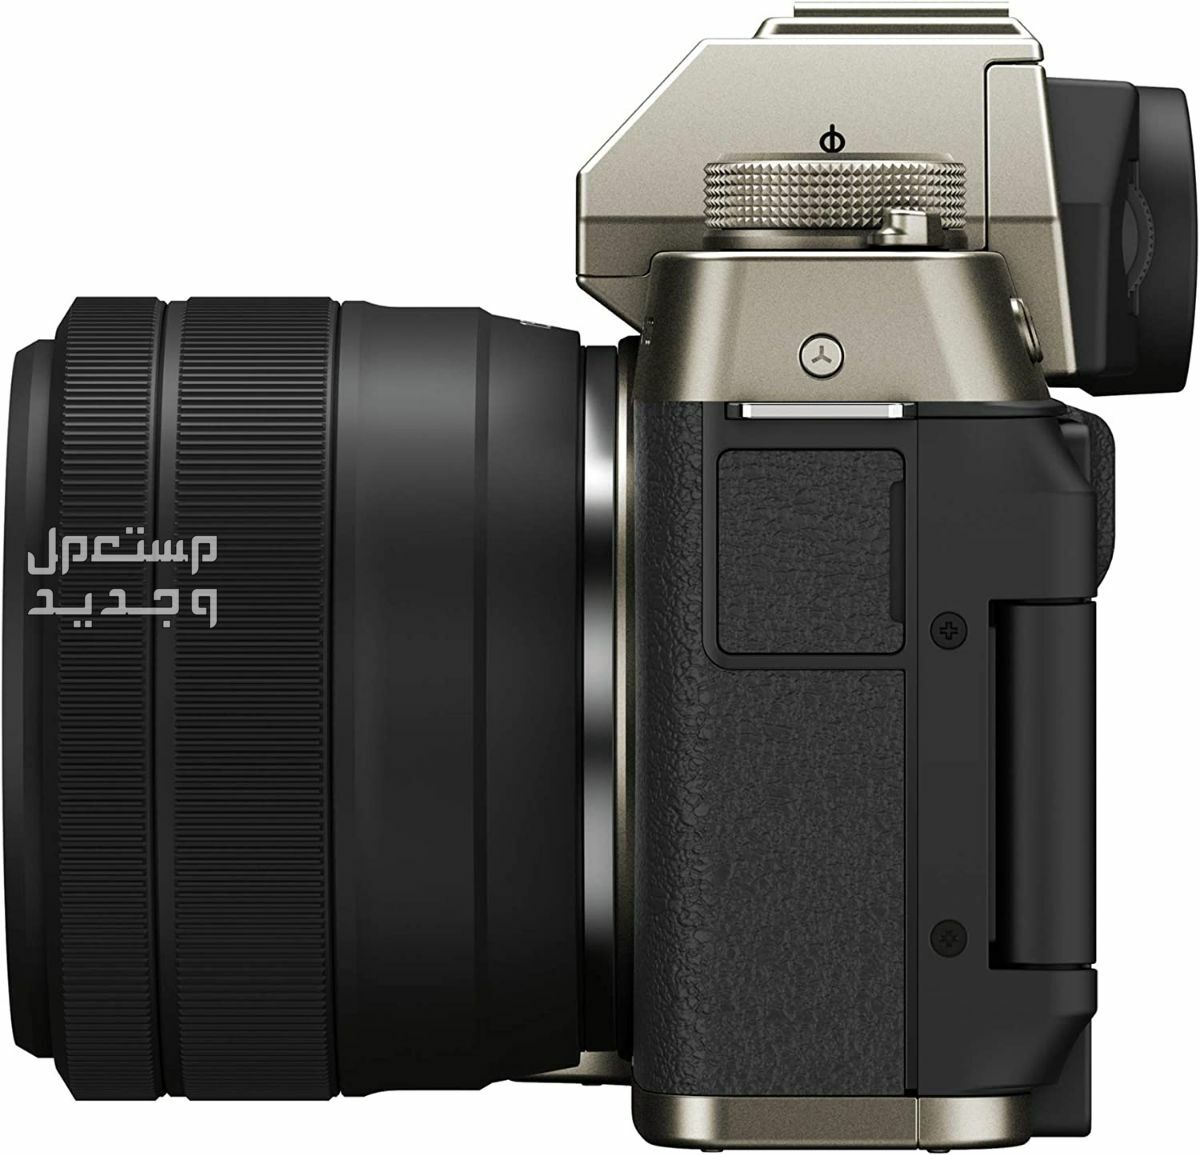 10 كاميرات تصوير ماركات عالمية بأسعار رخيصة سعر كاميرا Fujifilm X-T200